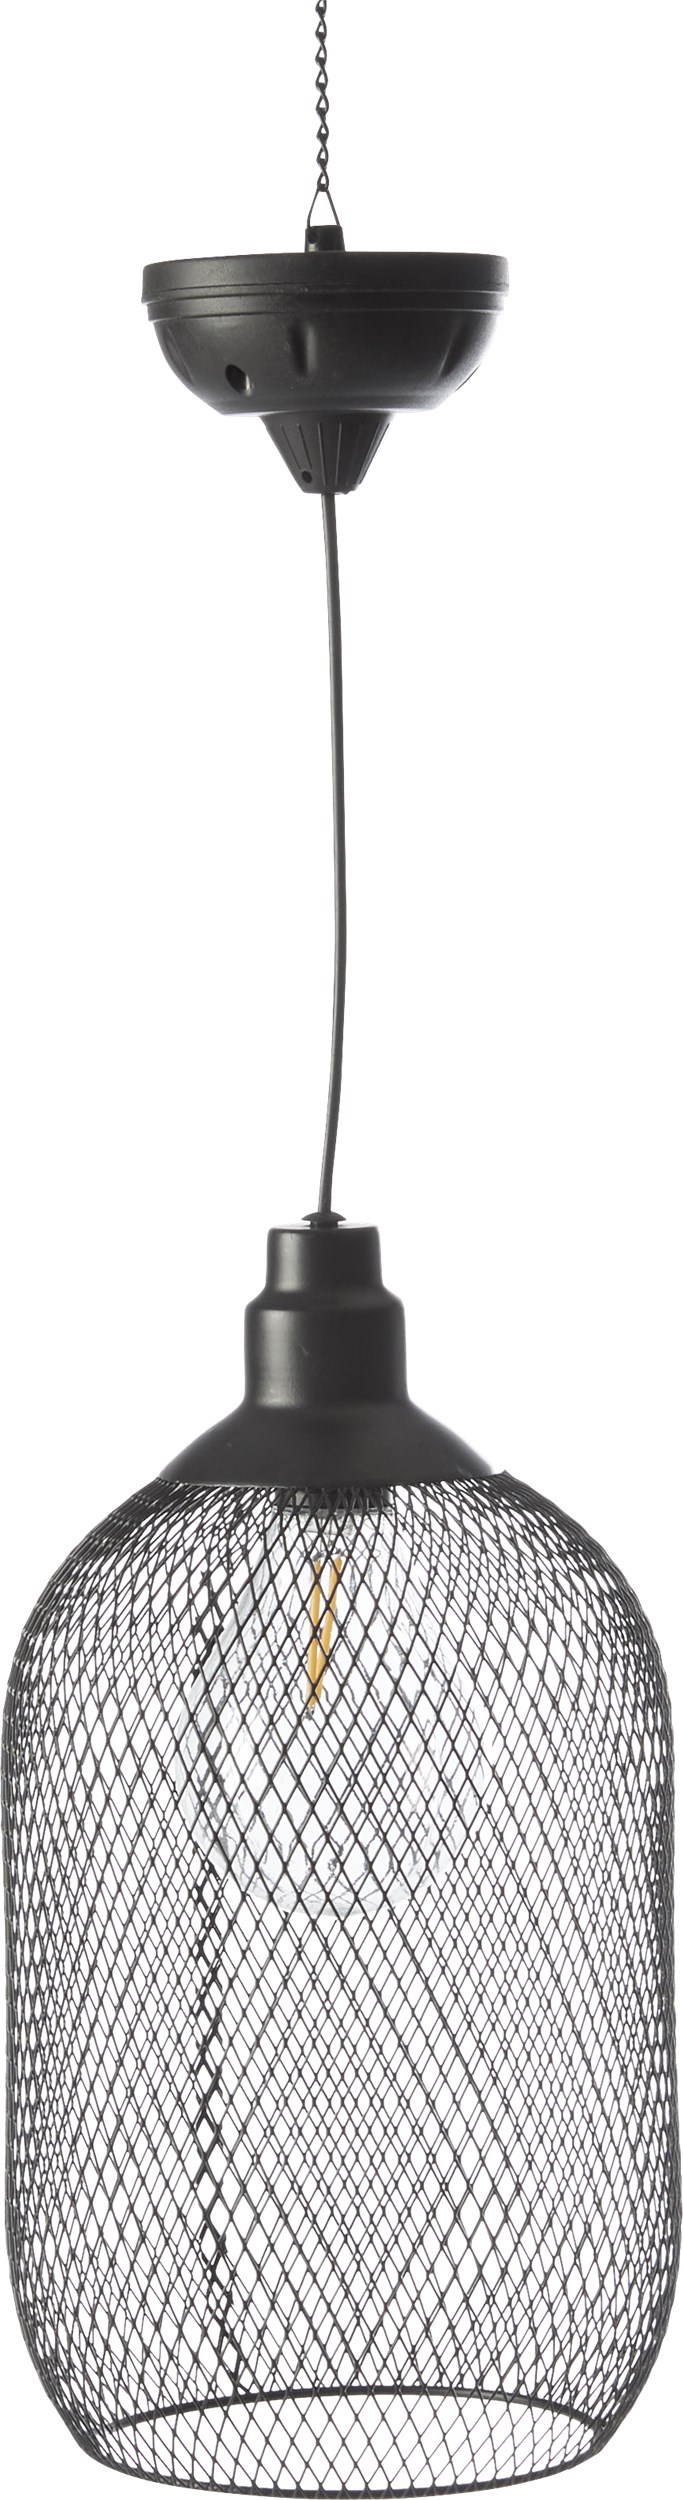 Turid Solarlampe - Skærm i sort flettet metal og Sort top og ledning